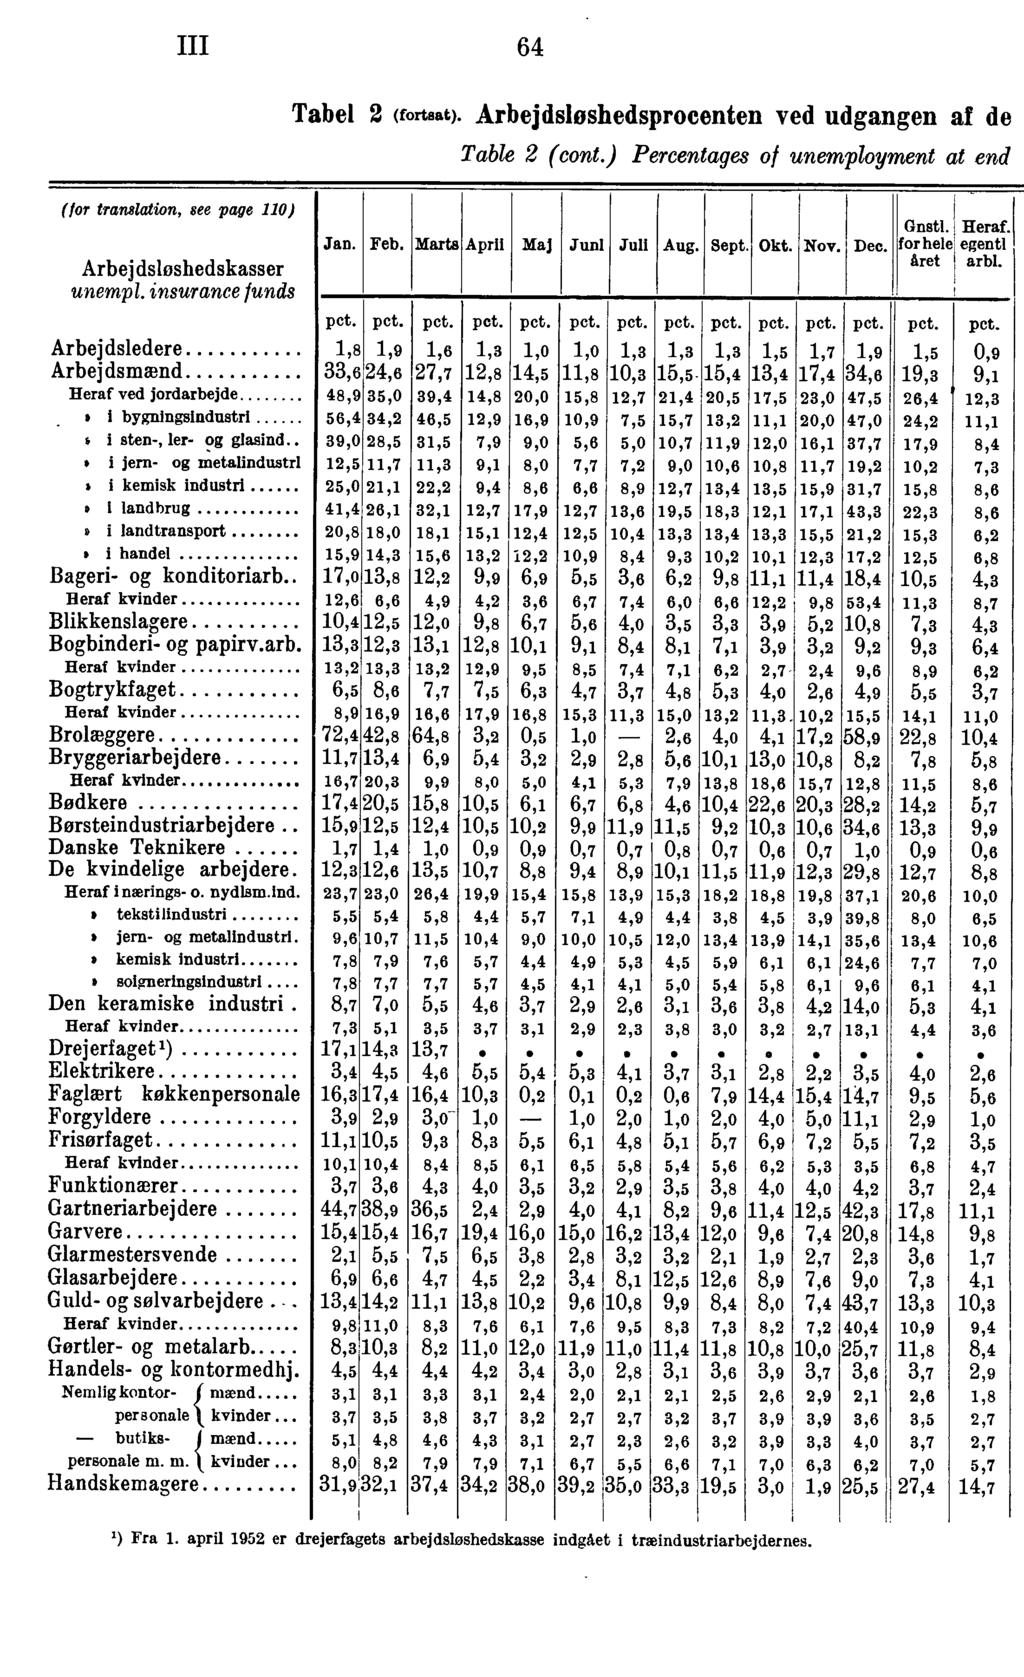 III 64 Tabel (fortsat). Arbejdsløshedsprocenten ved udgangen af de Table (cont.) Percentages of unemployment at end (for translation, see page 0) Arbej dsløshedskasser unempl.